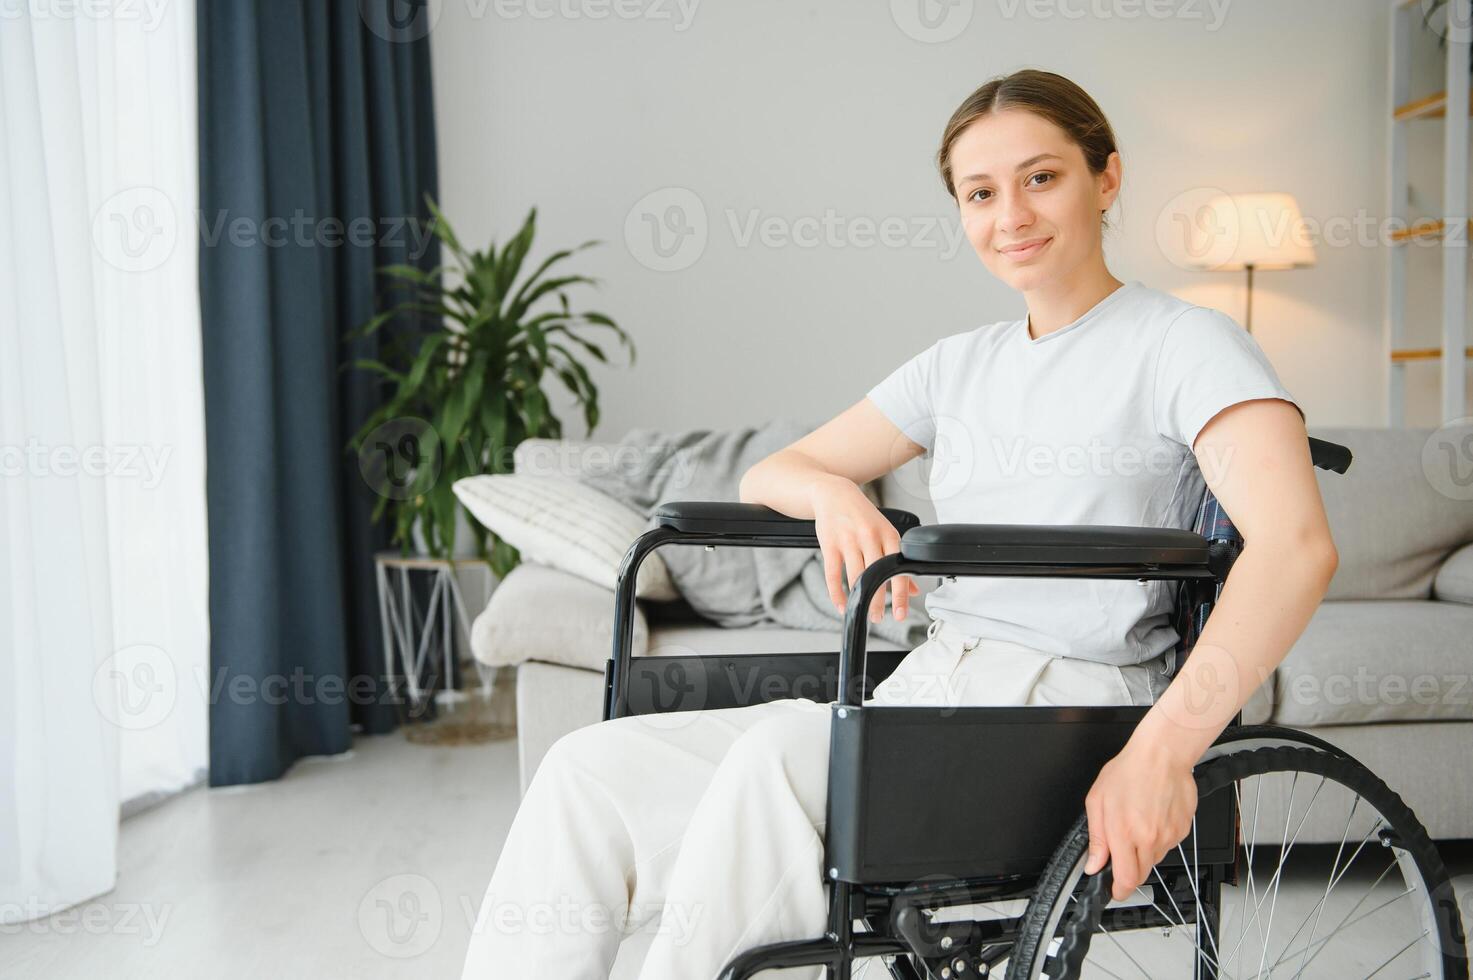 ung kvinna i rullstol på Hem i levande rum. foto